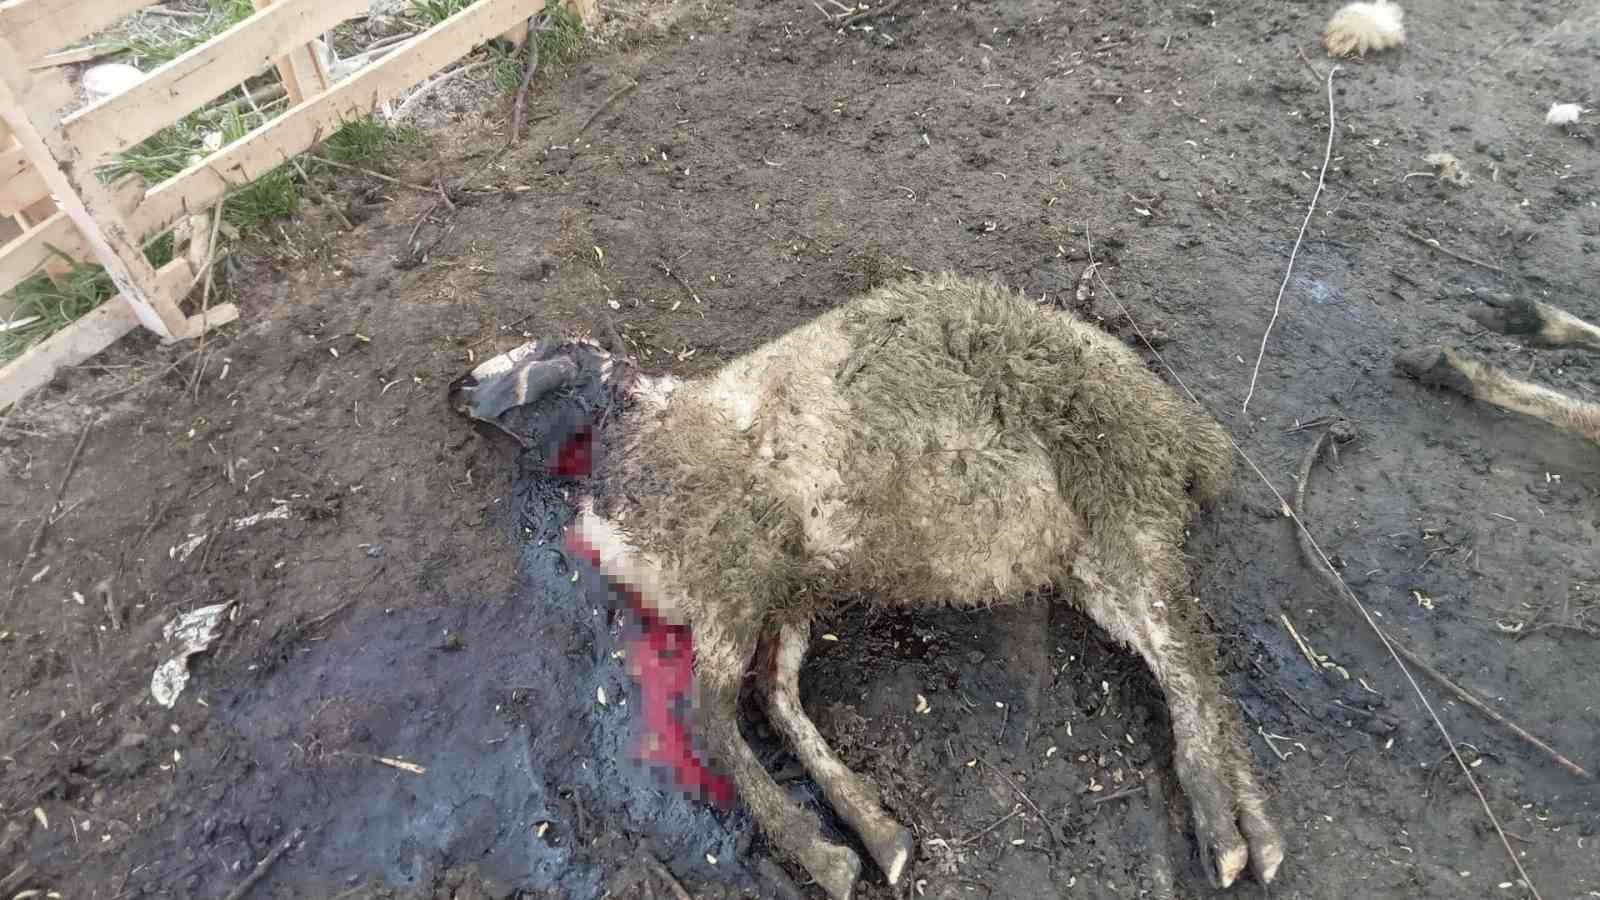 Koyunlara kurt dadandı iddiası
